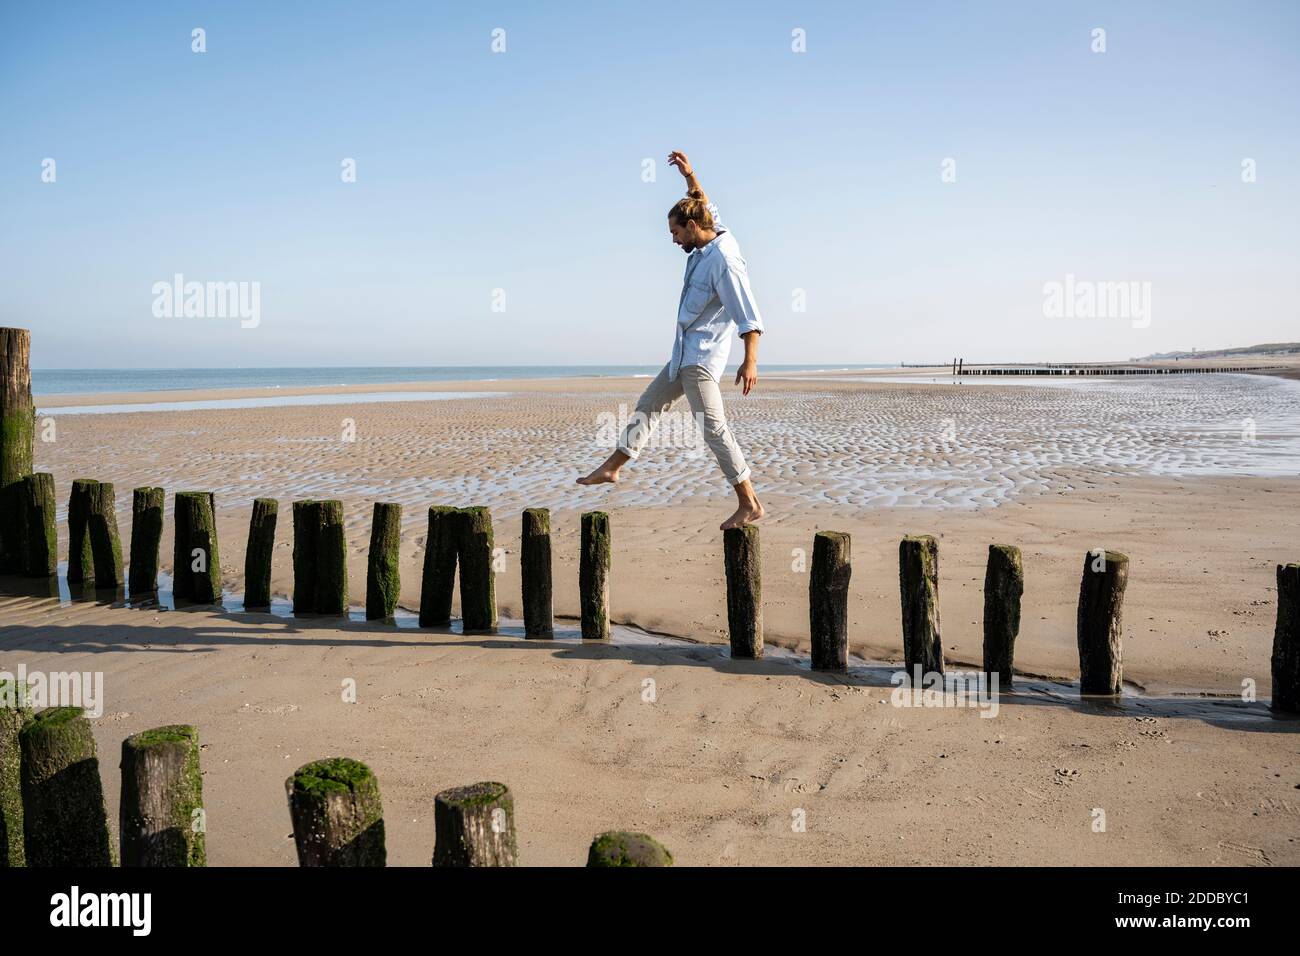 Un jeune homme qui se balance en marchant sur des poteaux en bois à la plage contre le ciel dégagé Banque D'Images